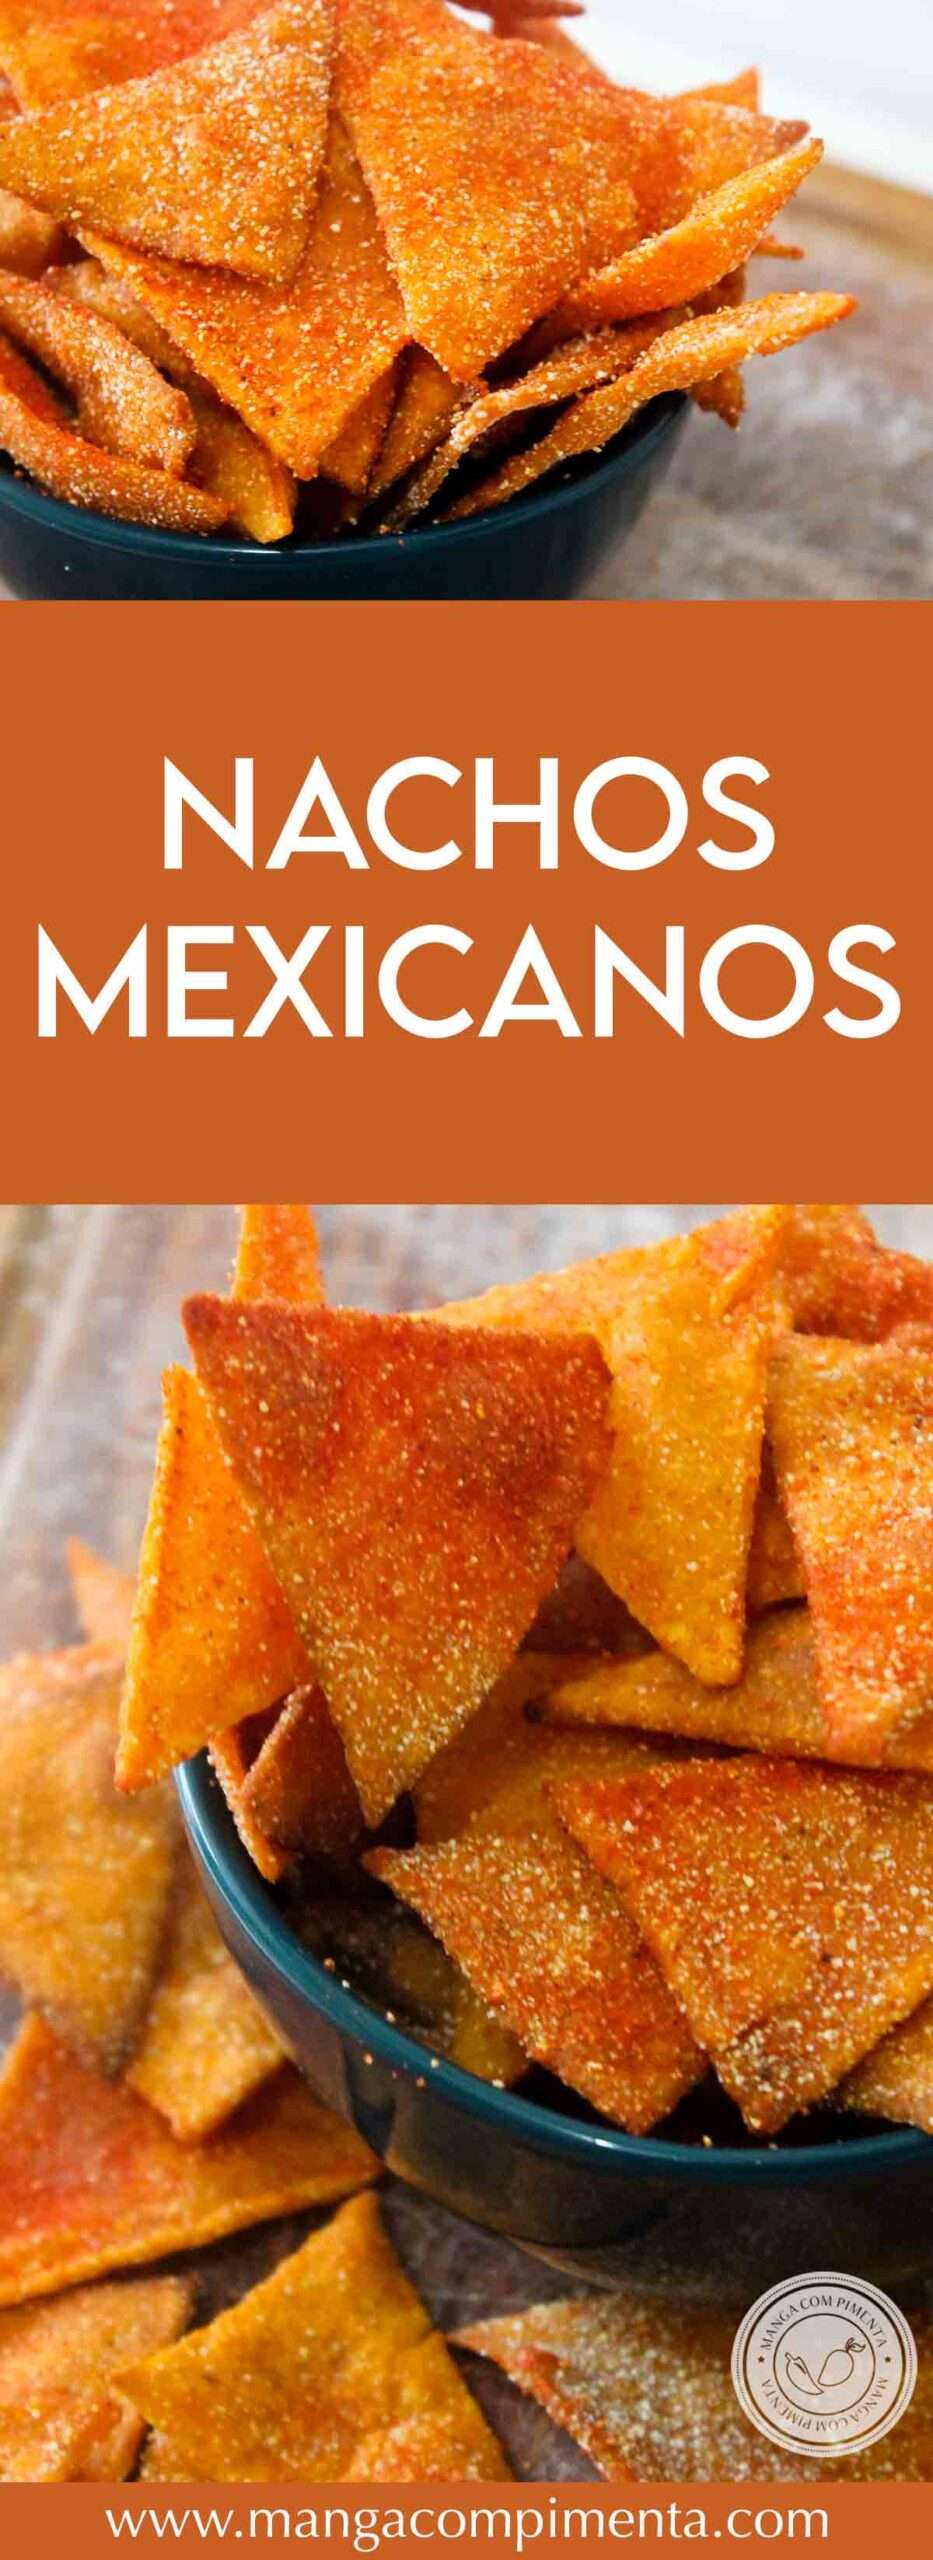 Receita de Nachos Mexicanos - prepare esse salgado crocante de milho delicioso - tipo o Doritos, na sua cozinha.  